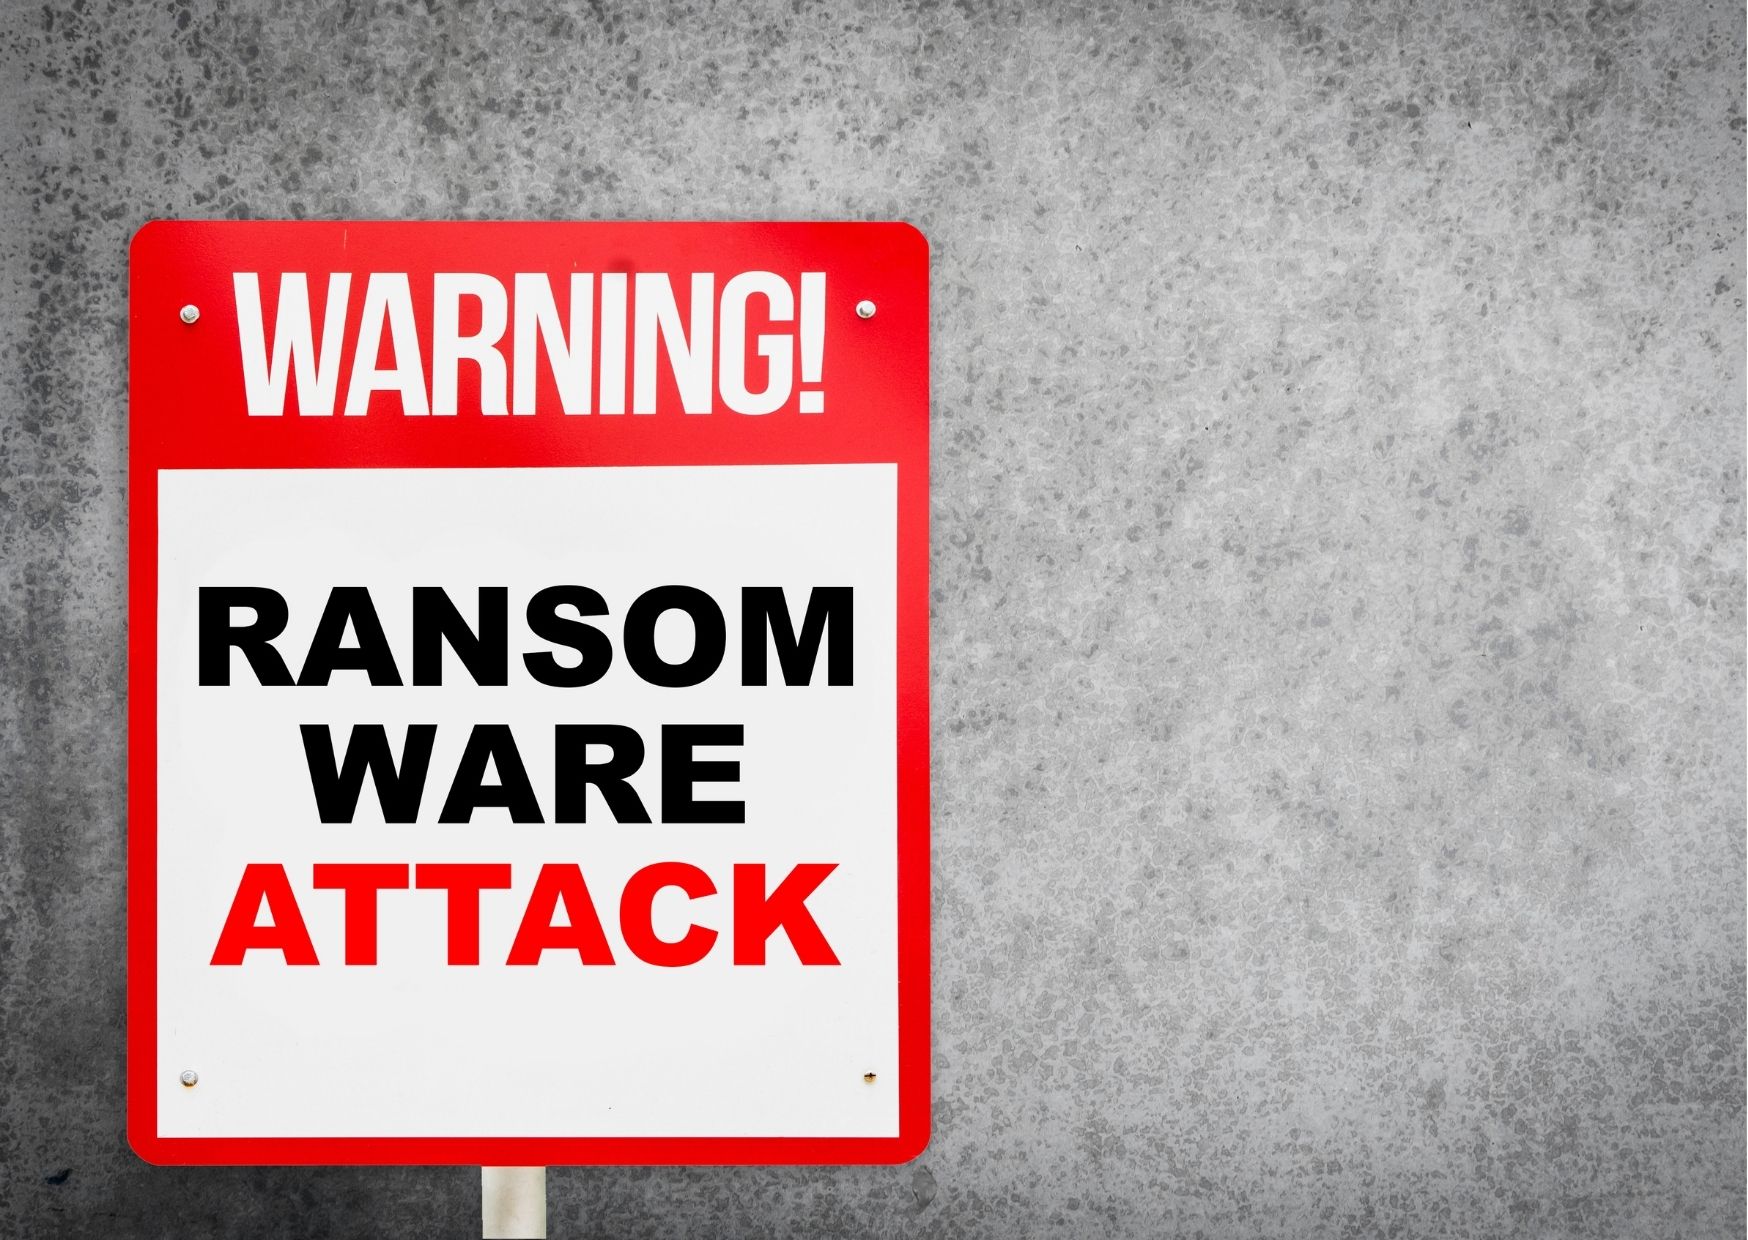 Attacco ransomware: come contenerlo prima che si diffonda